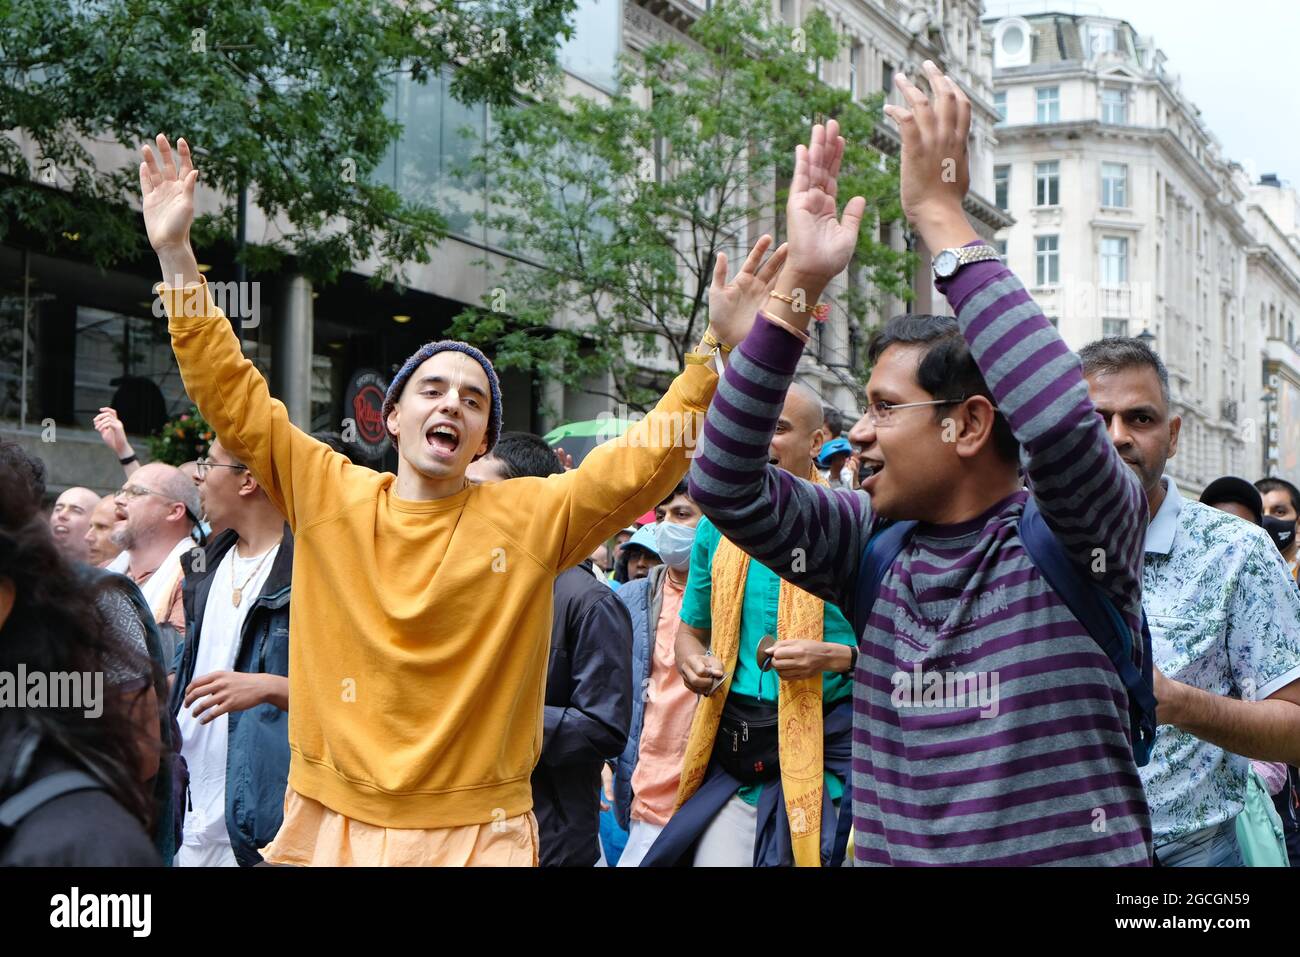 Les adeptes de Hare Krishna se rassemblent pour célébrer le Rathayatra ou le Festival des Chariots où ils chantaient et dansaient dans les rues du centre de Londres. Banque D'Images